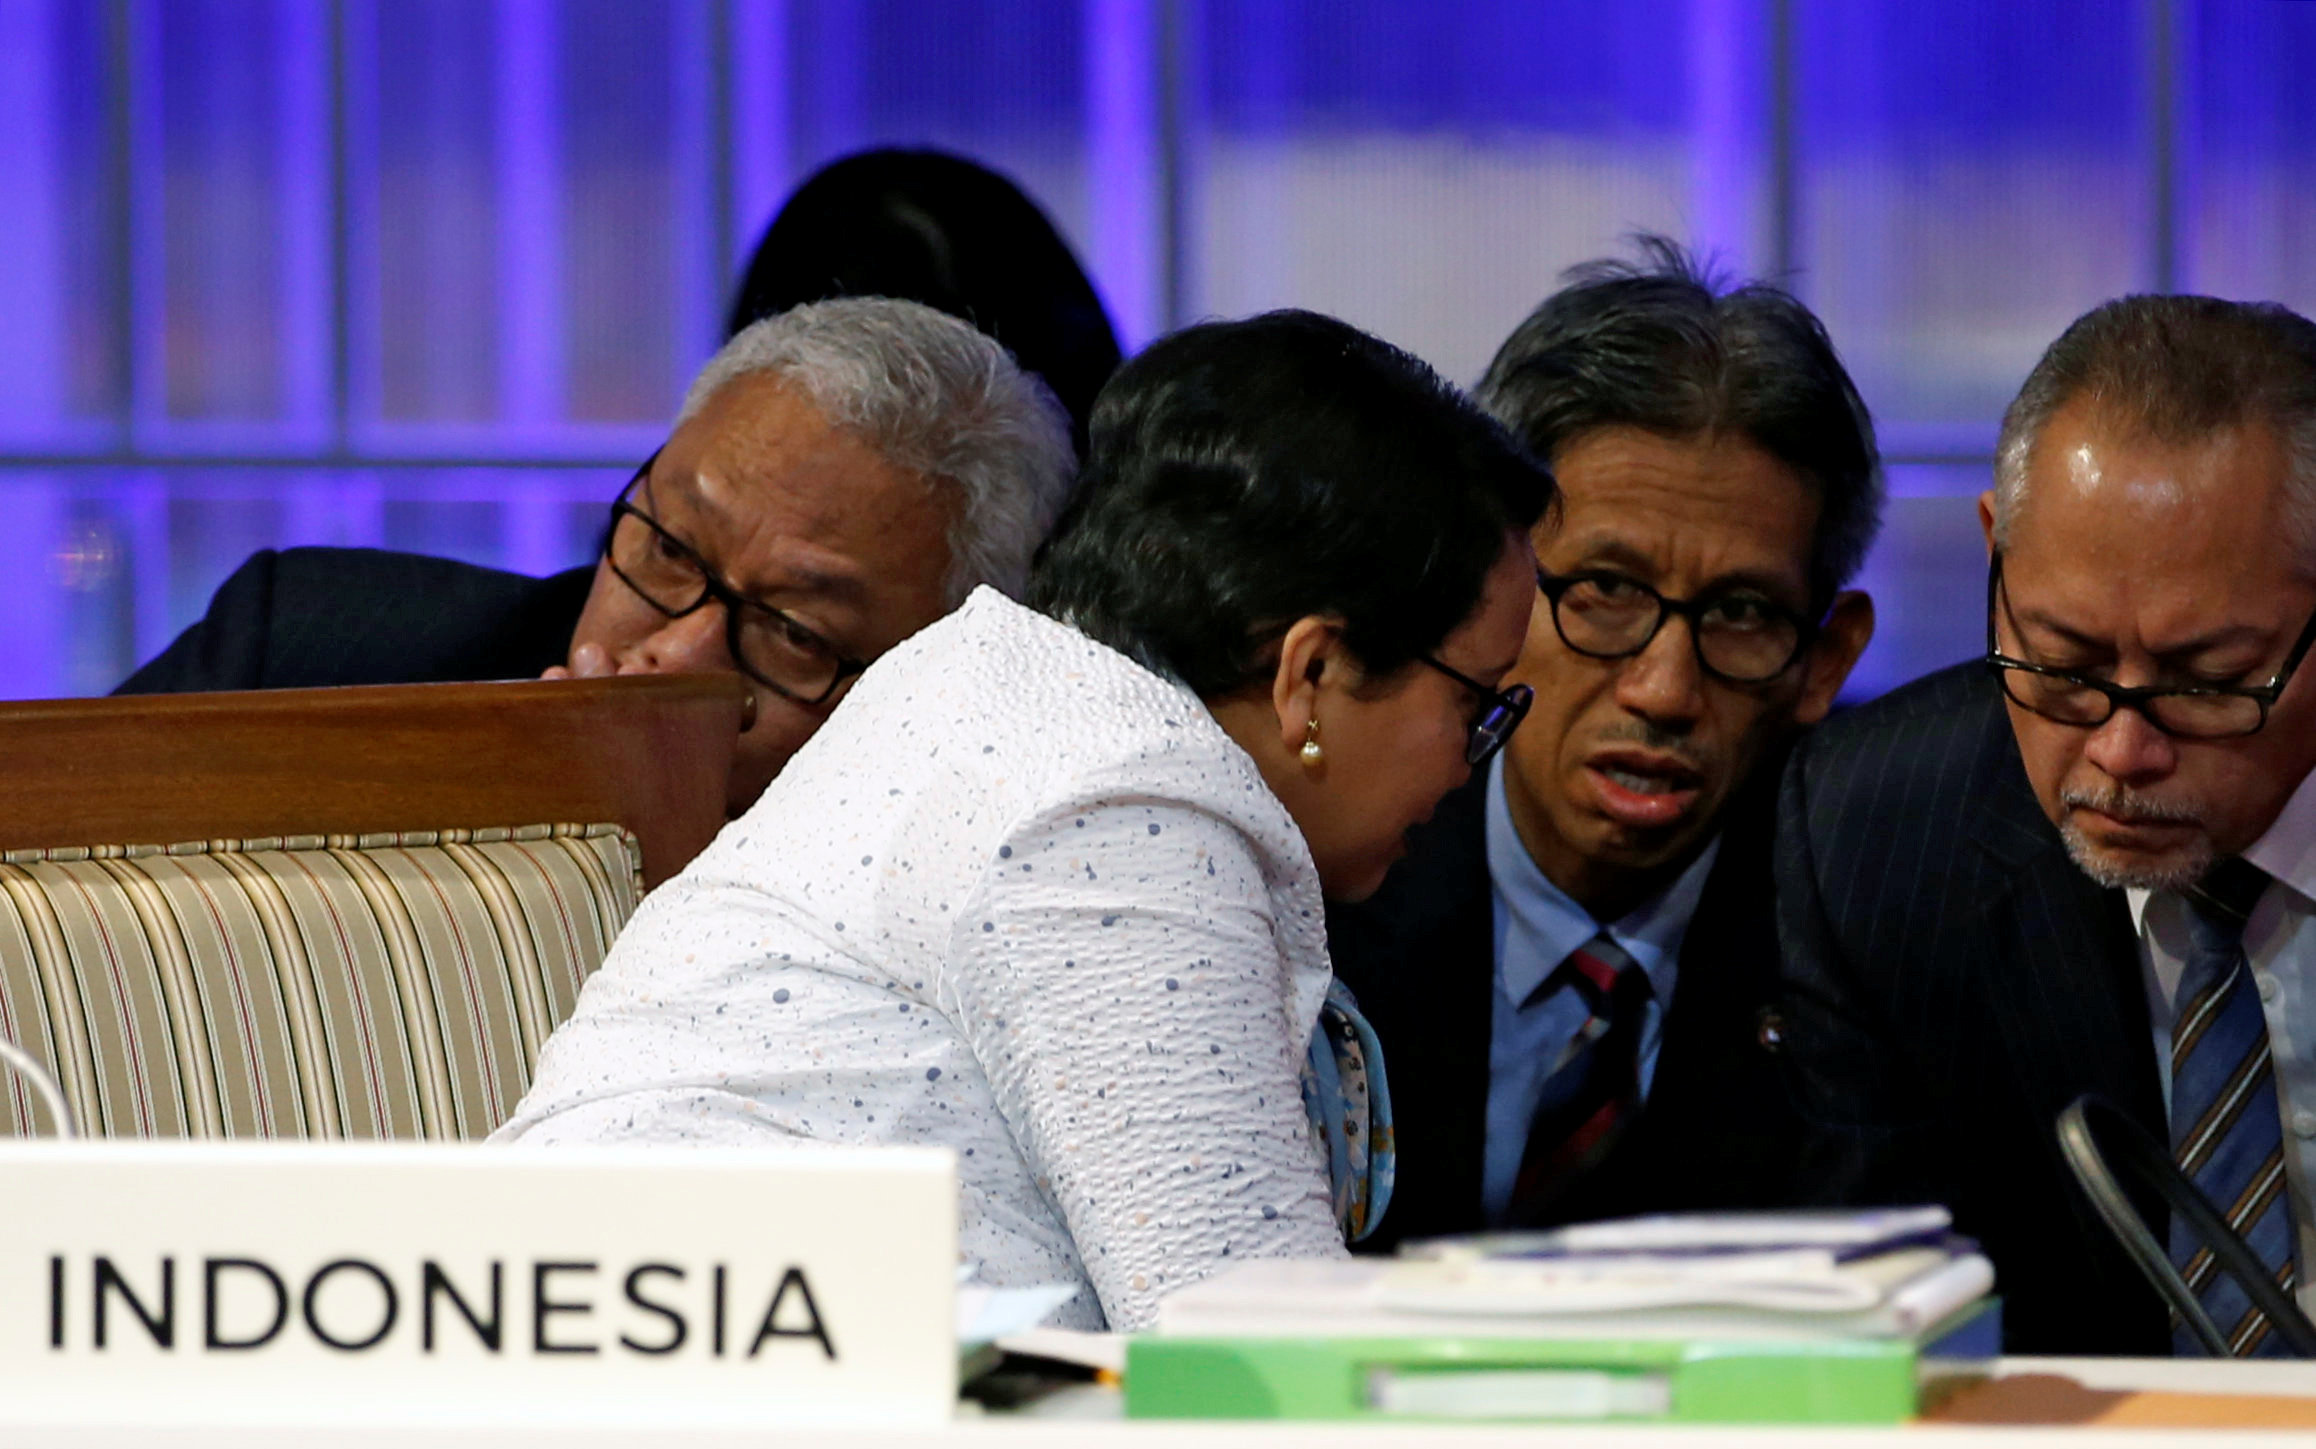 وزيرة خارجية اندونيسيا تتناقش مع الوفد المرافق لها